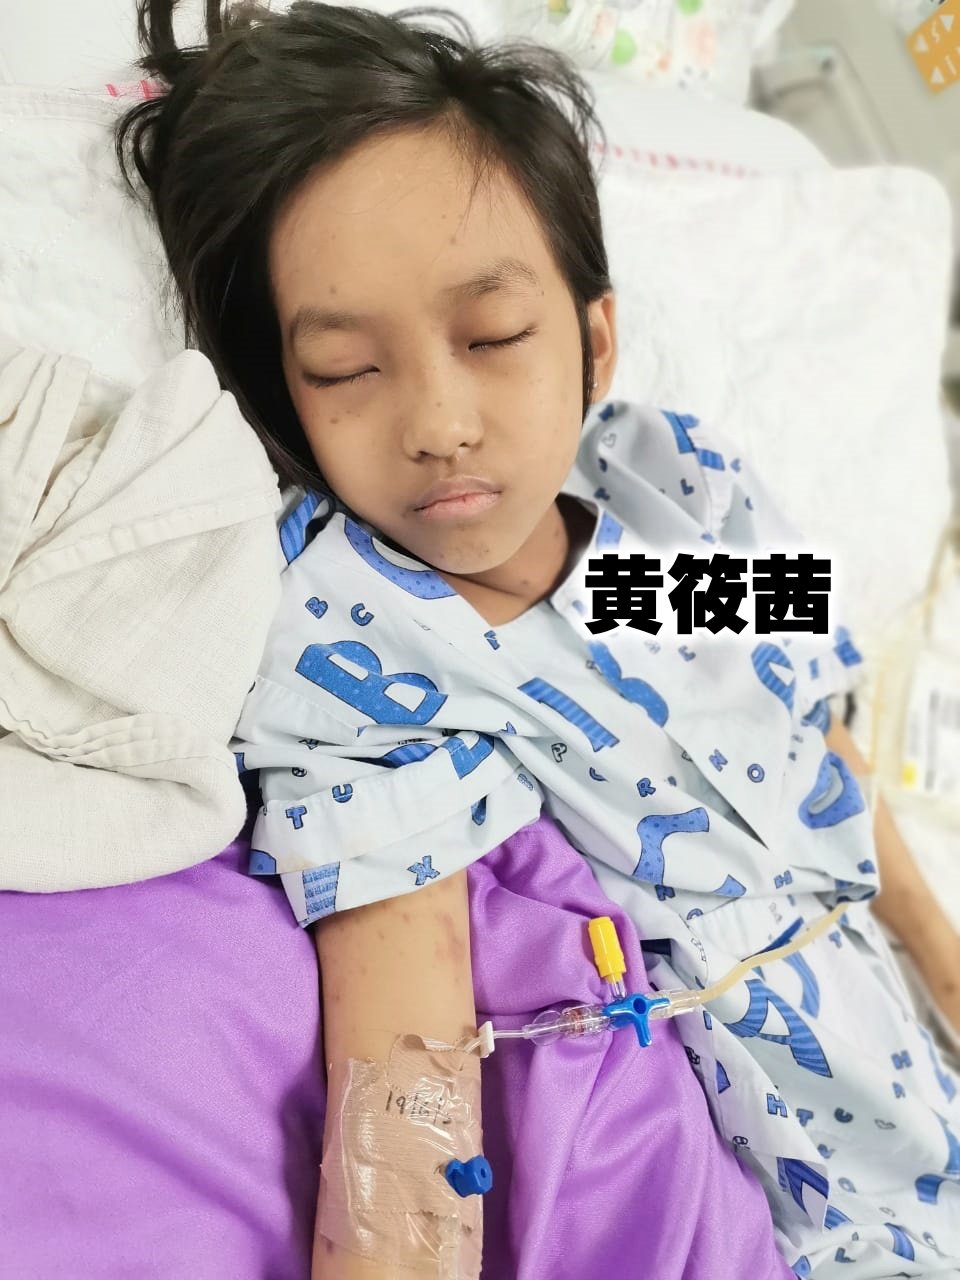 10岁的黄筱茜本应在开心上学去，惟因患上罕见基因病，目前等待移植父亲的骨髓续命。